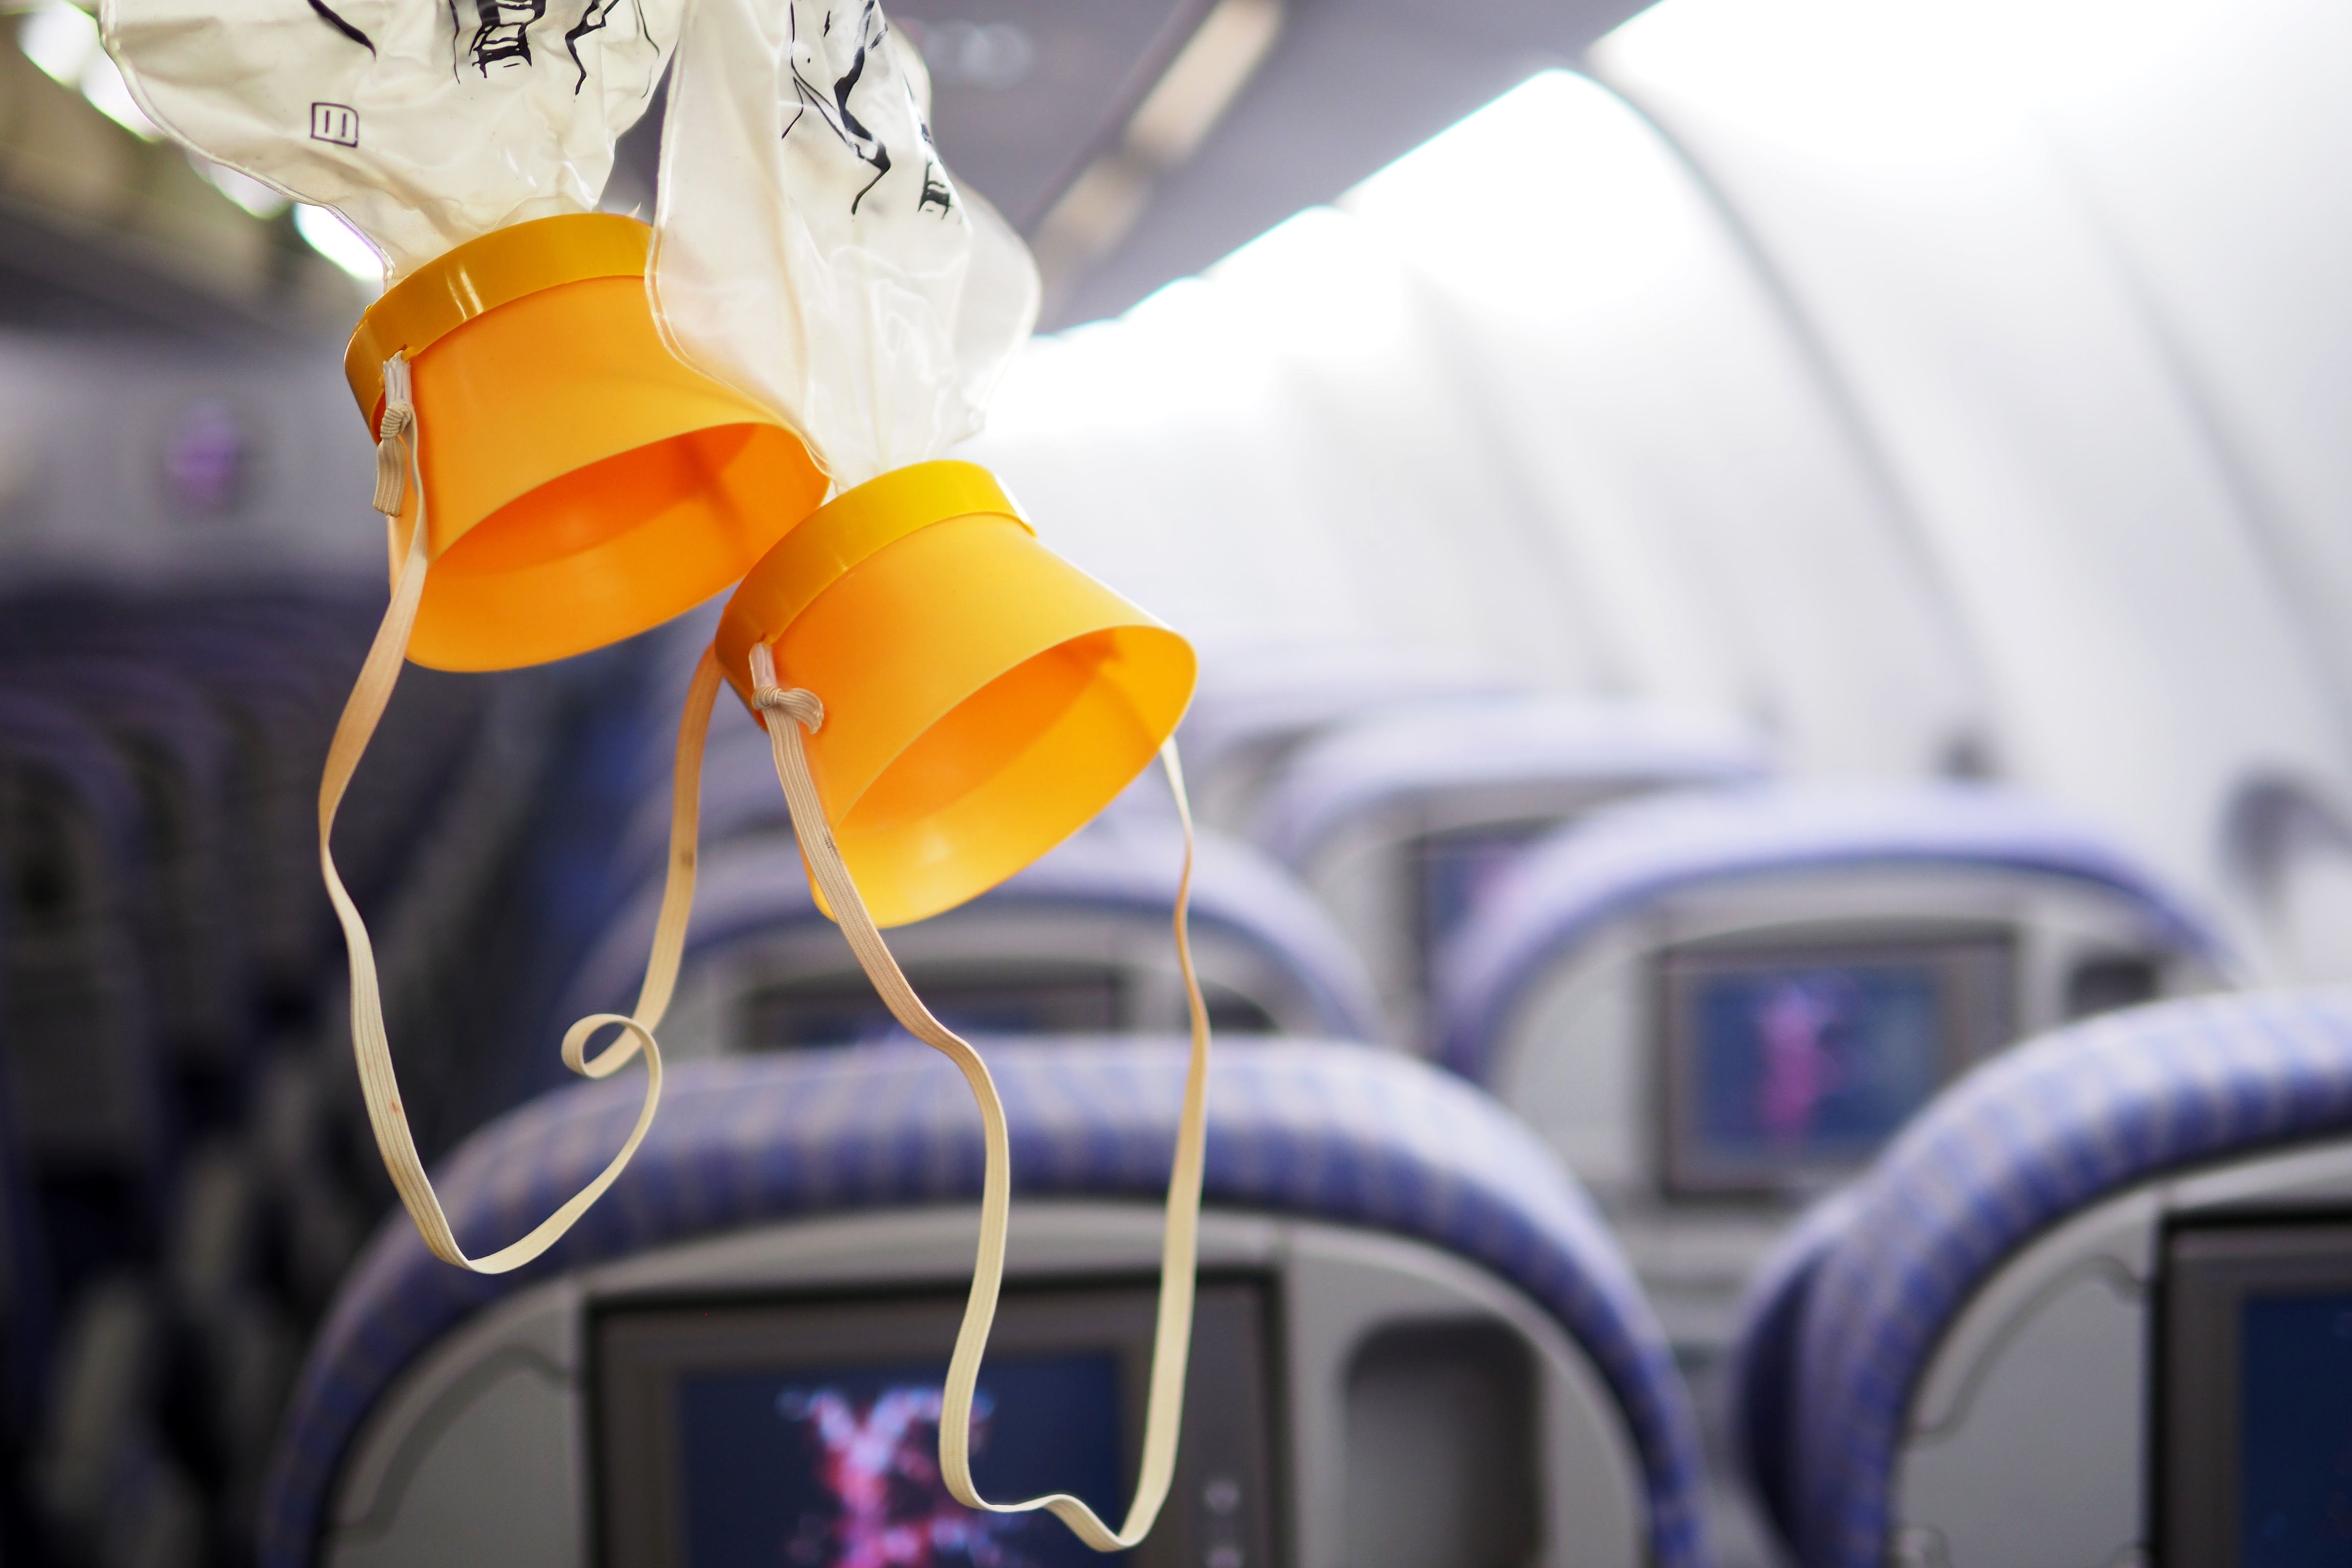 Oxygen Masks deployed inside a passenger aircraft cabin.